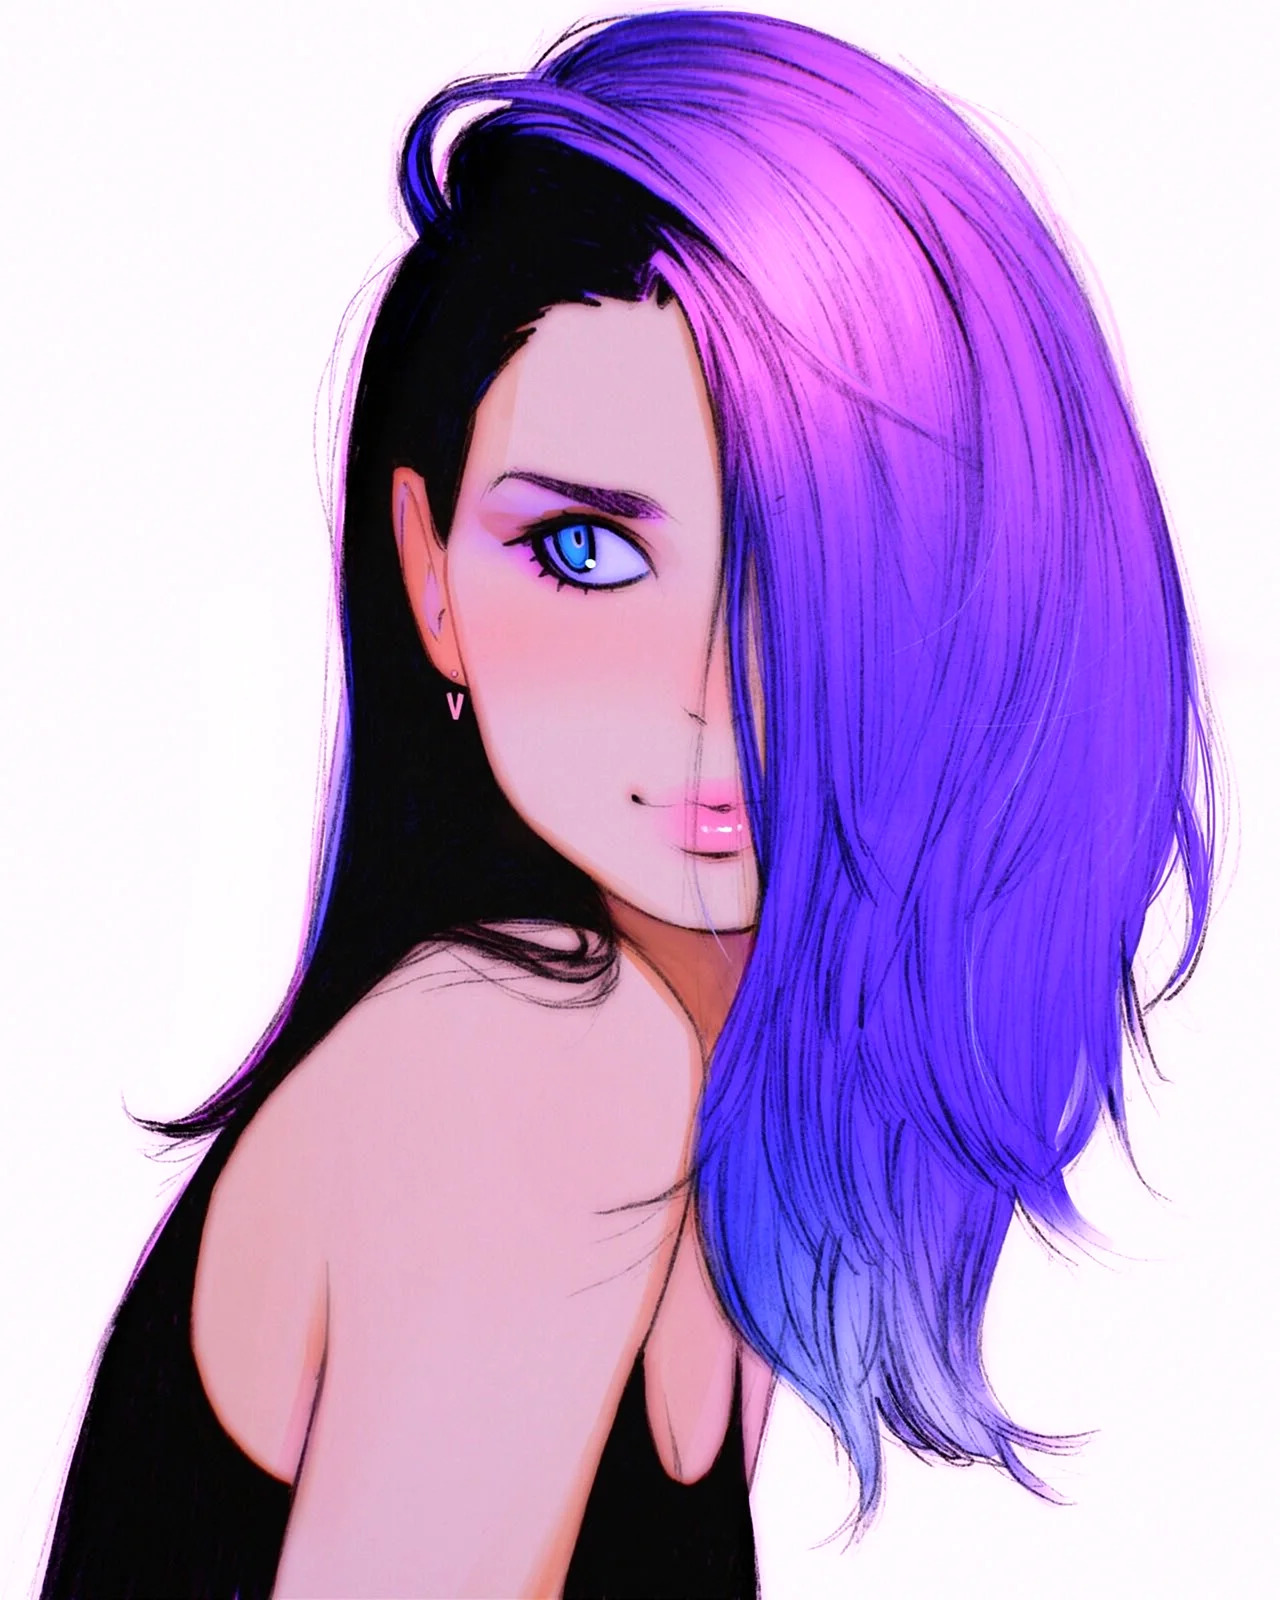 Аниме девушка с разноцветными волосами